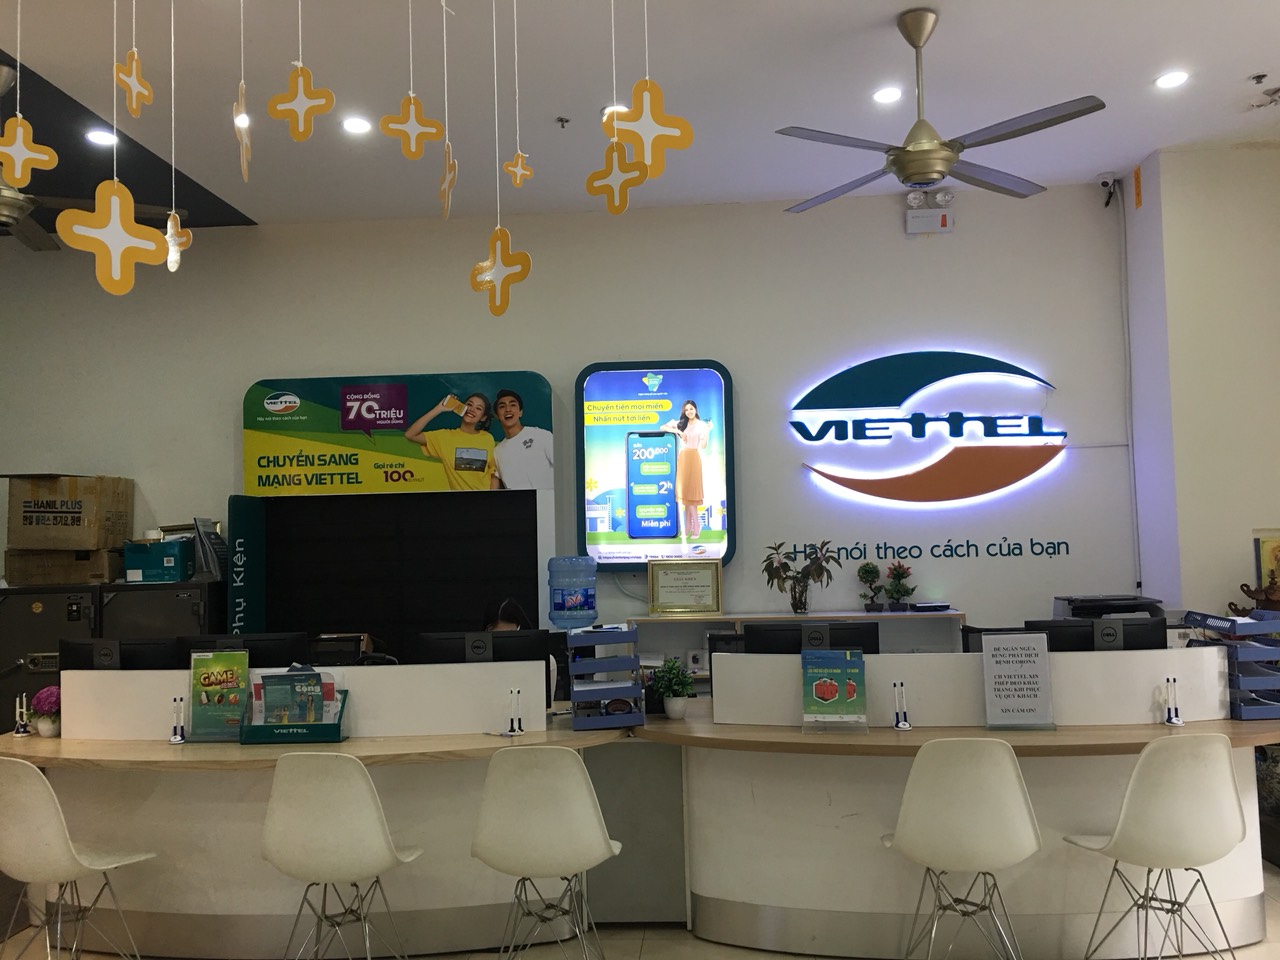 Simviettel.com là địa chỉ chuyên bán sim Viettel Lộc phát giá rẻ